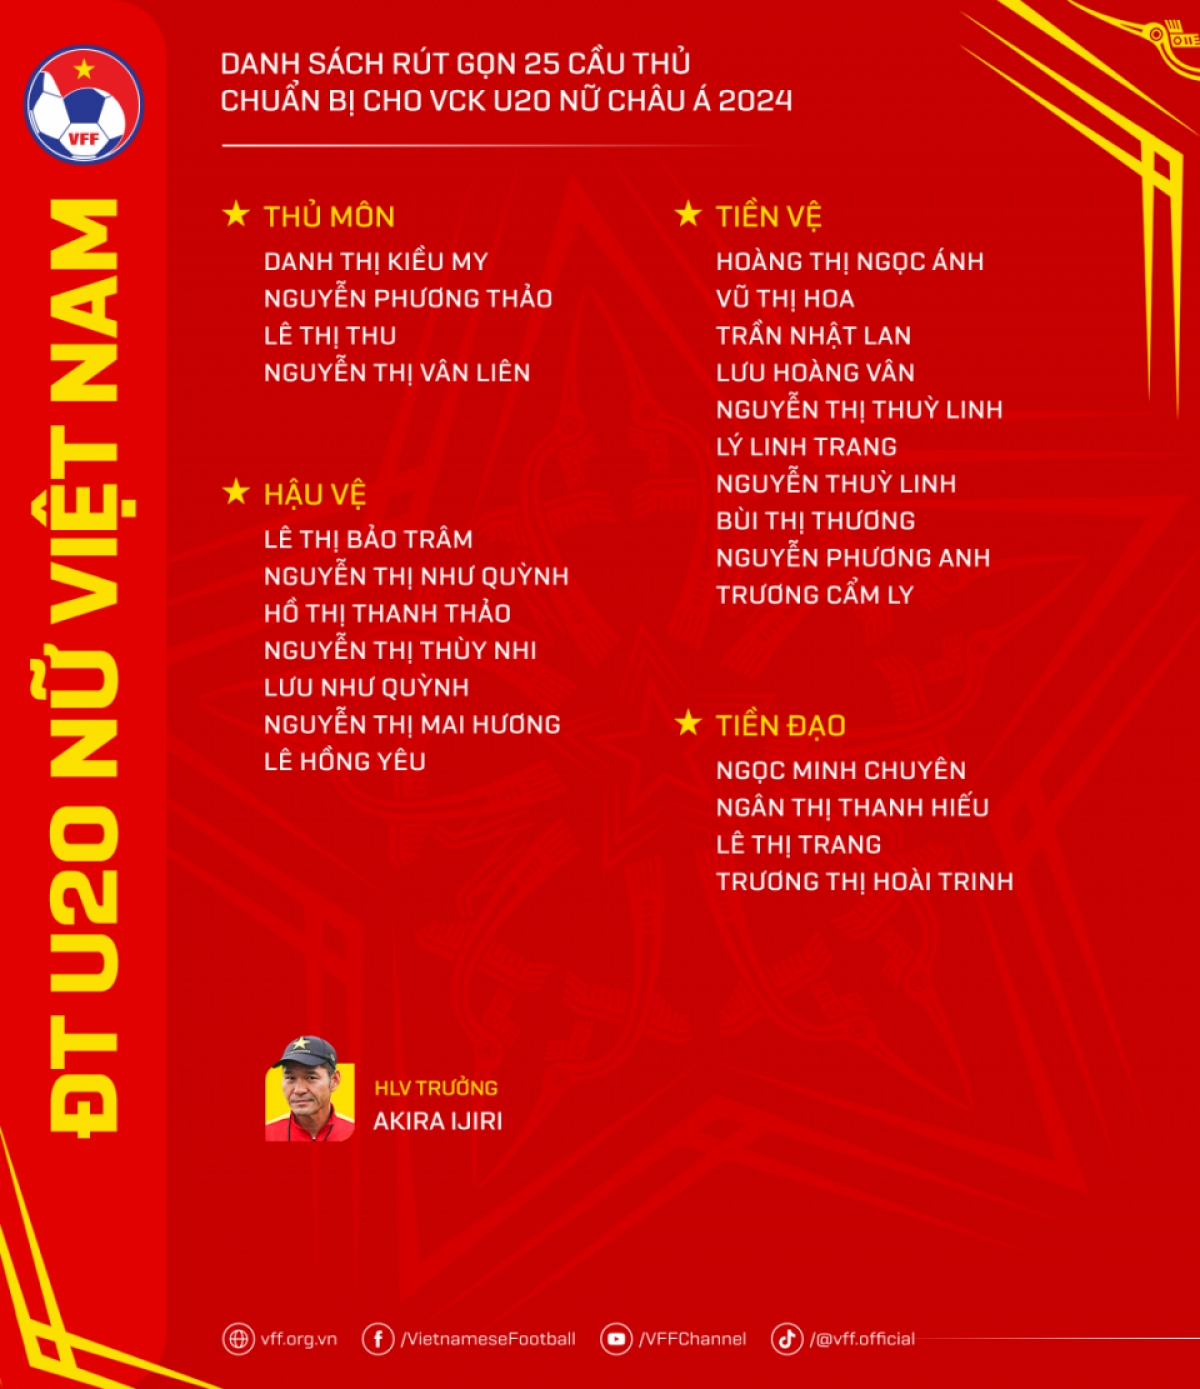 Danh sách các cầu thủ U20 nữ Việt Nam chuẩn bị cho VCK U20 nữ châu Á 2024 (Ảnh VFF)